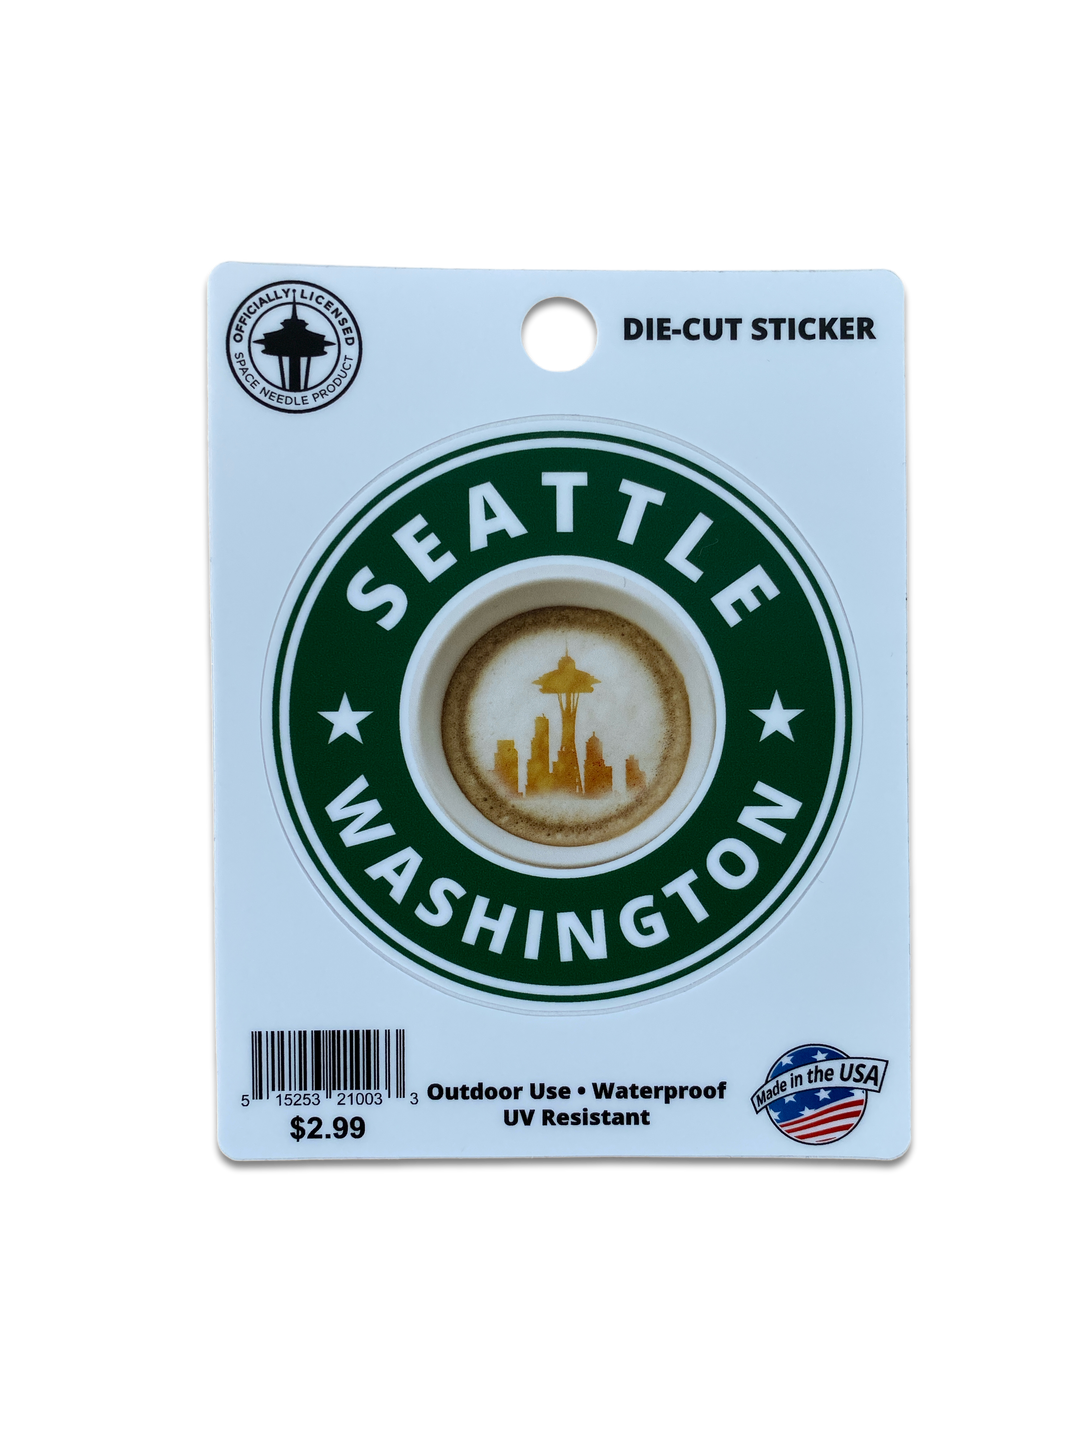 Seattle Coffee Sticker